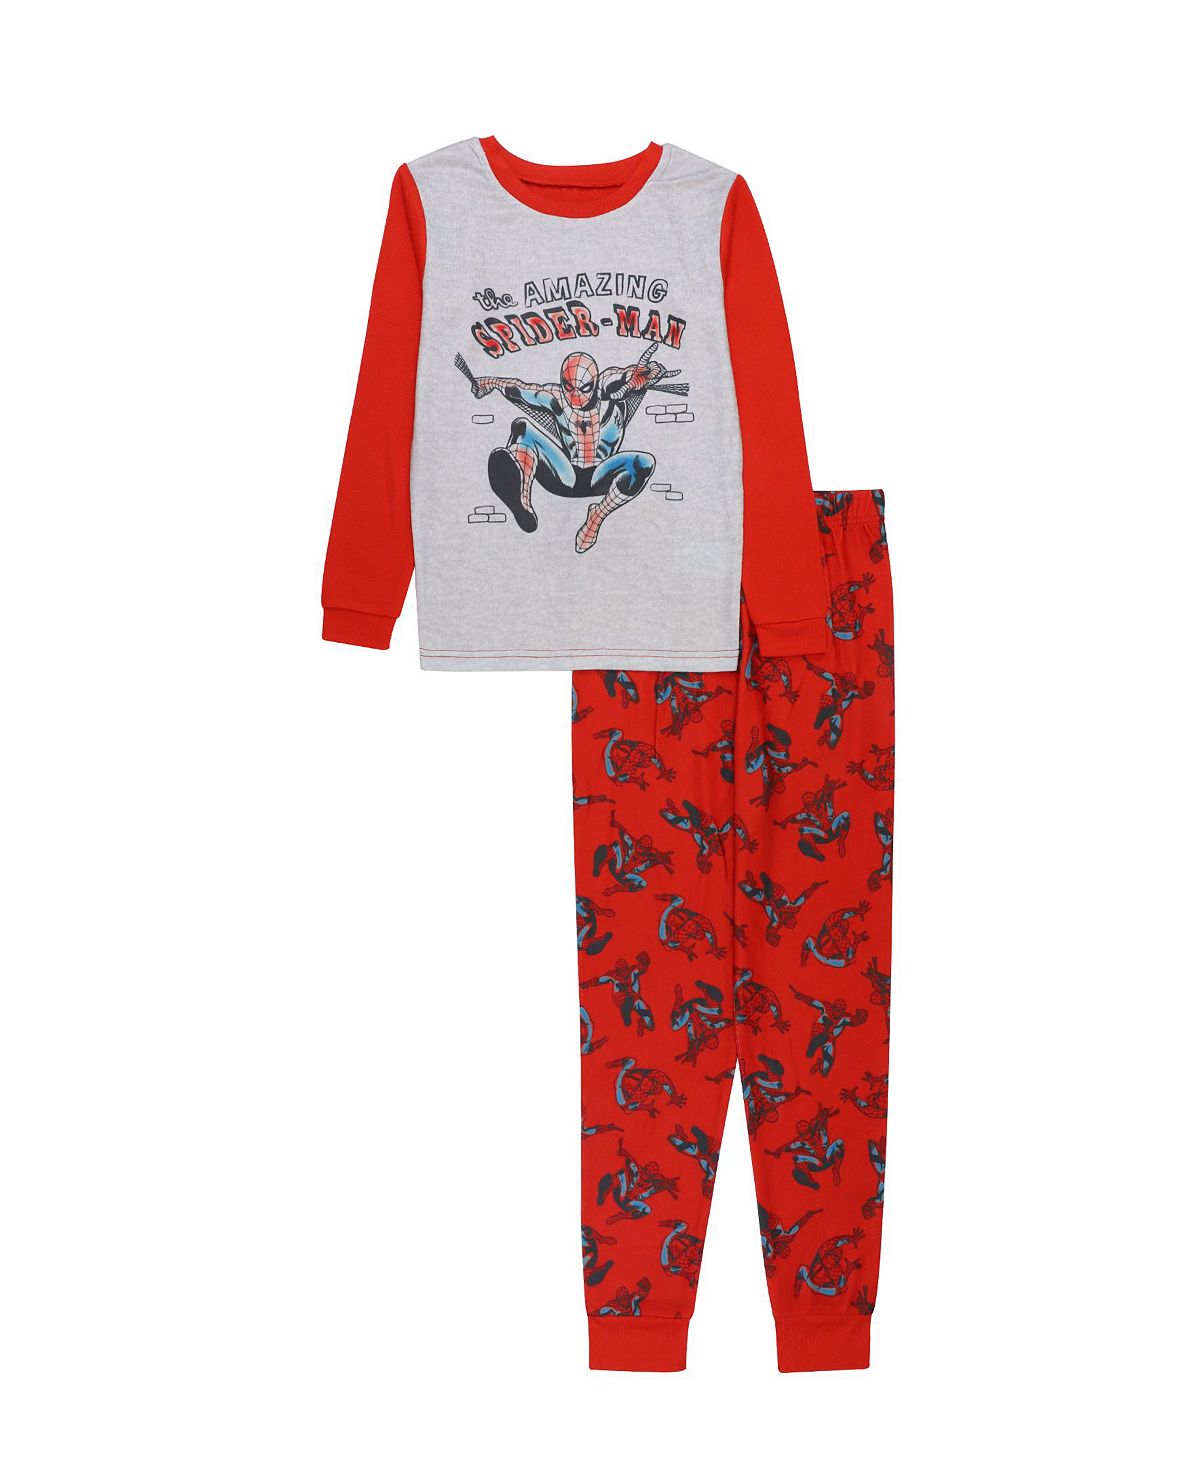 rahat lokum assorted 200 g Пижамы для больших мальчиков, комплект из 2 предметов Marvel